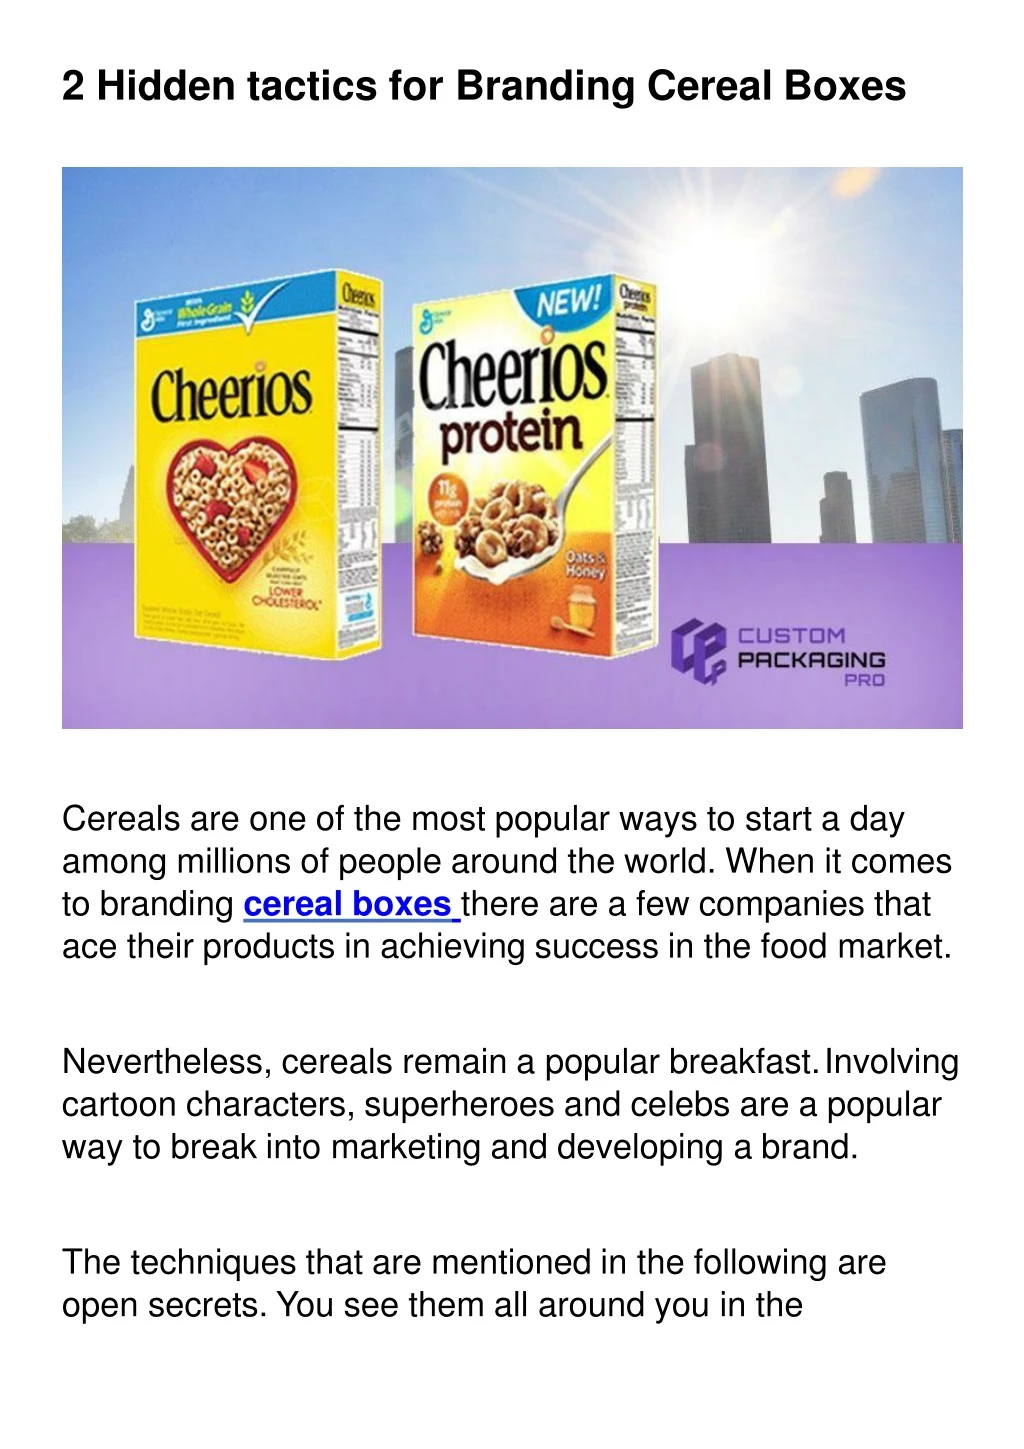 2 hidden tactics for branding cereal boxes